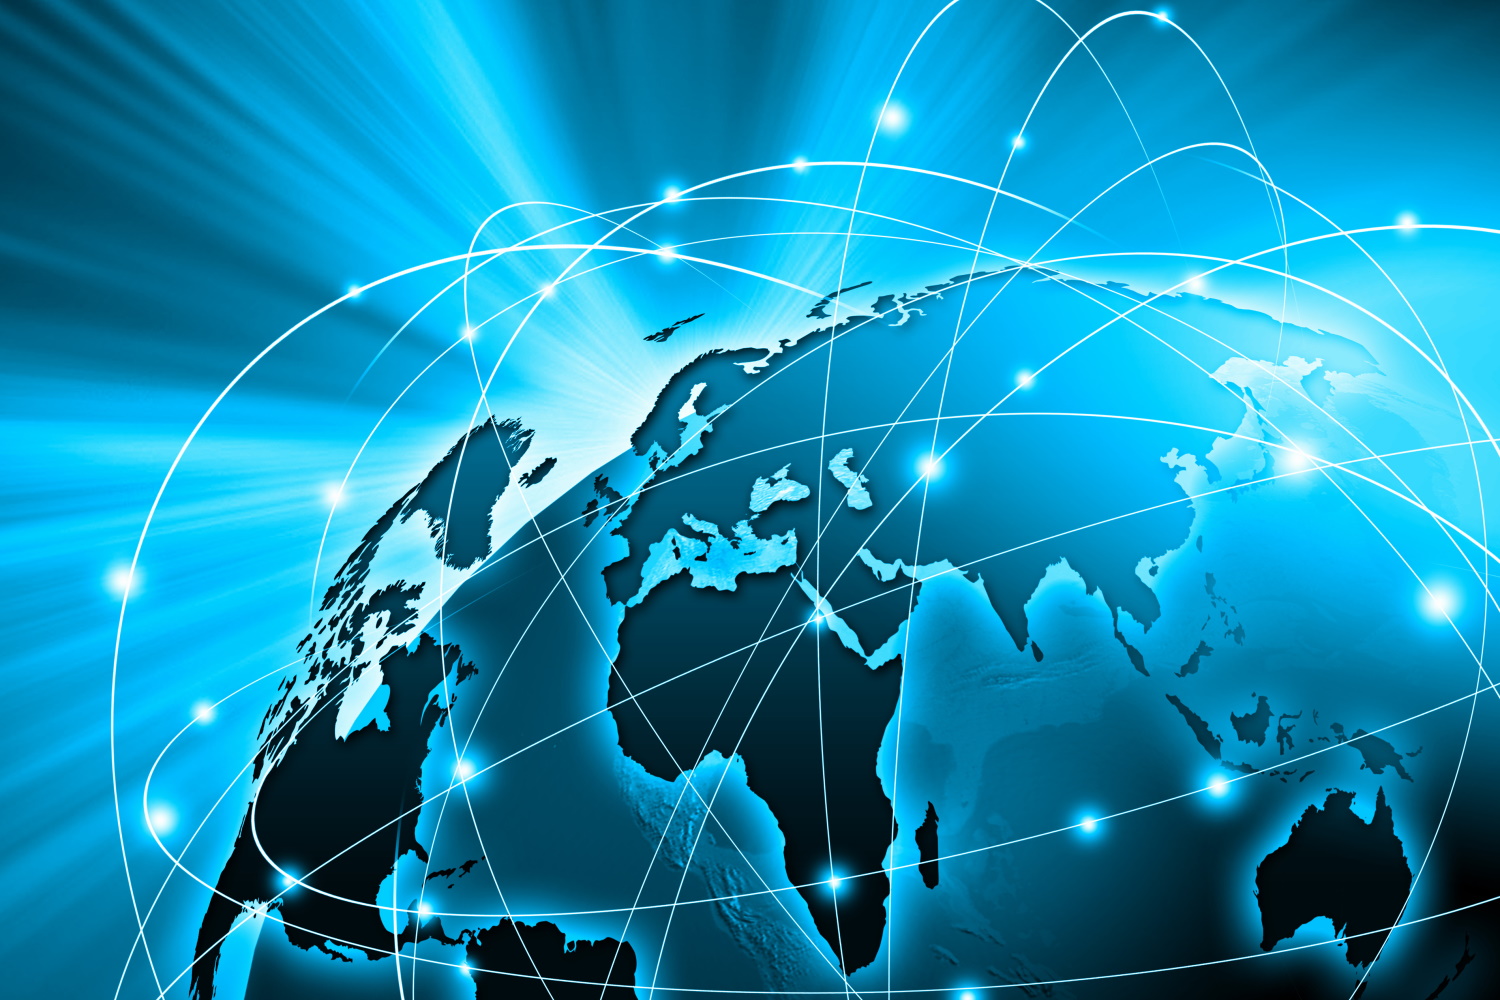 Digitale Darstellung eines Globus, auf dem verschiedene Länder und Kontinte durch Linien verbunden werden, die symbolisch für zwischenstaatlichen Austausch stehen.